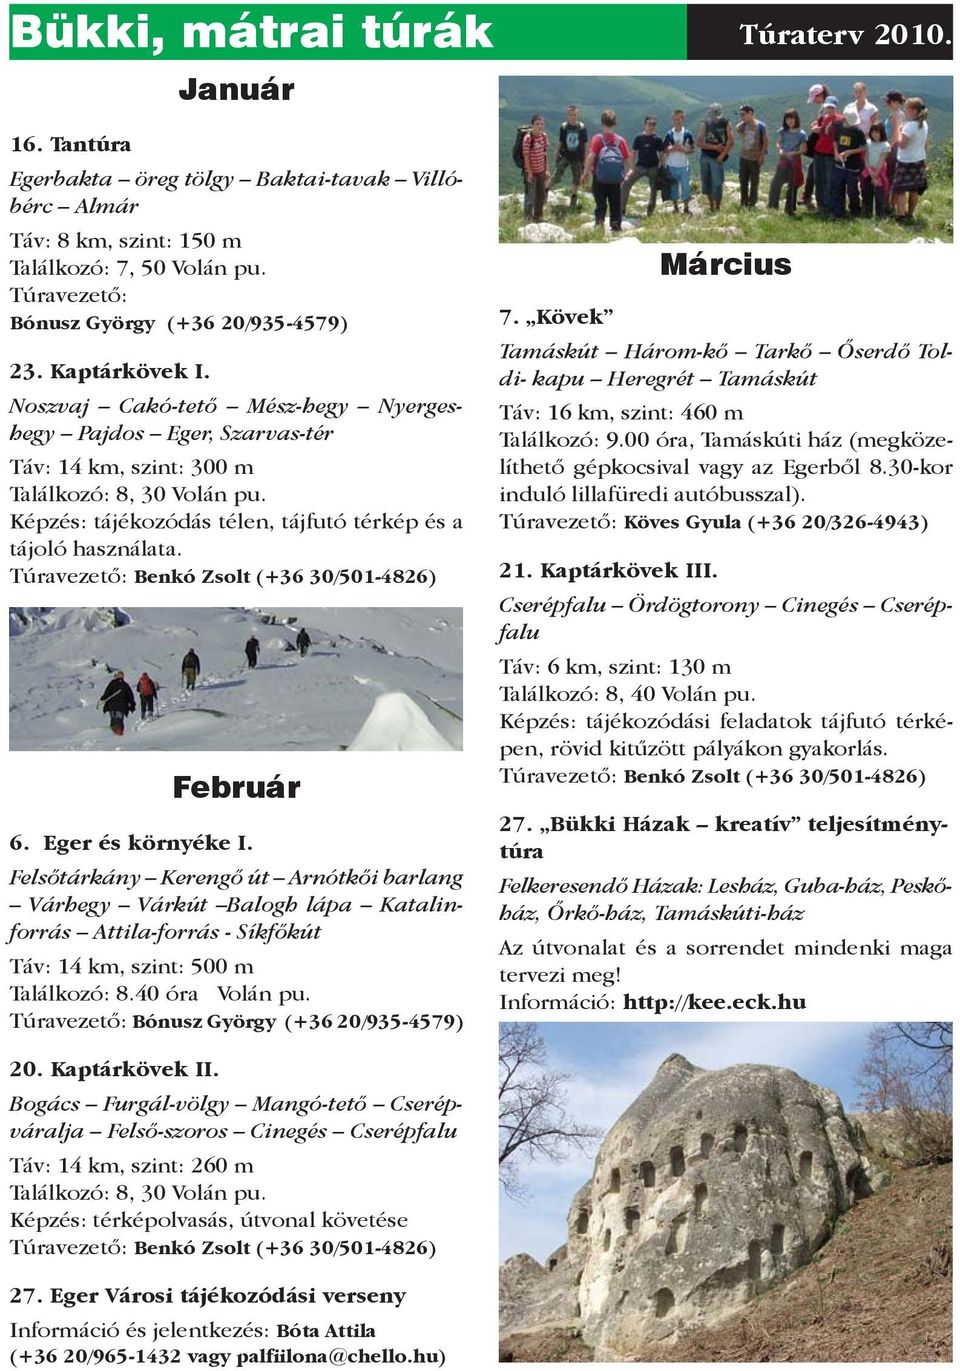 Képzés: tájékozódás télen, tájfutó térkép és a tájoló használata. Túravezető: Benkó Zsolt (+36 30/501-4826) Február 6. Eger és környéke I.